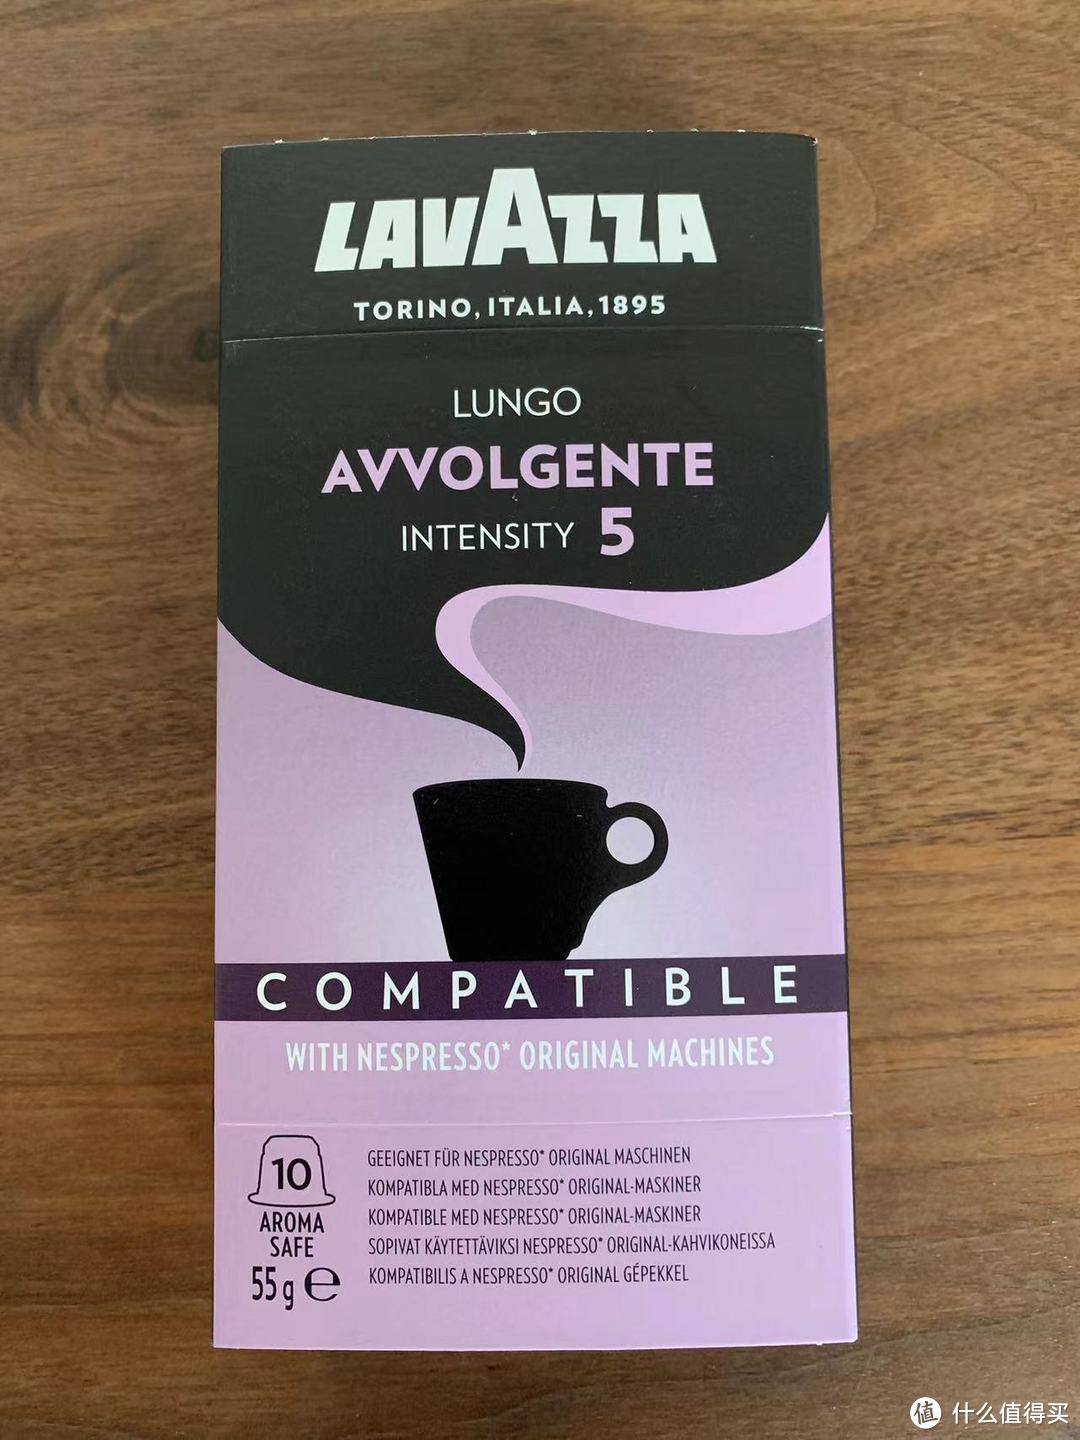 可信赖的大牌第三方，LAVAZZA胶囊咖啡机用户的快乐。